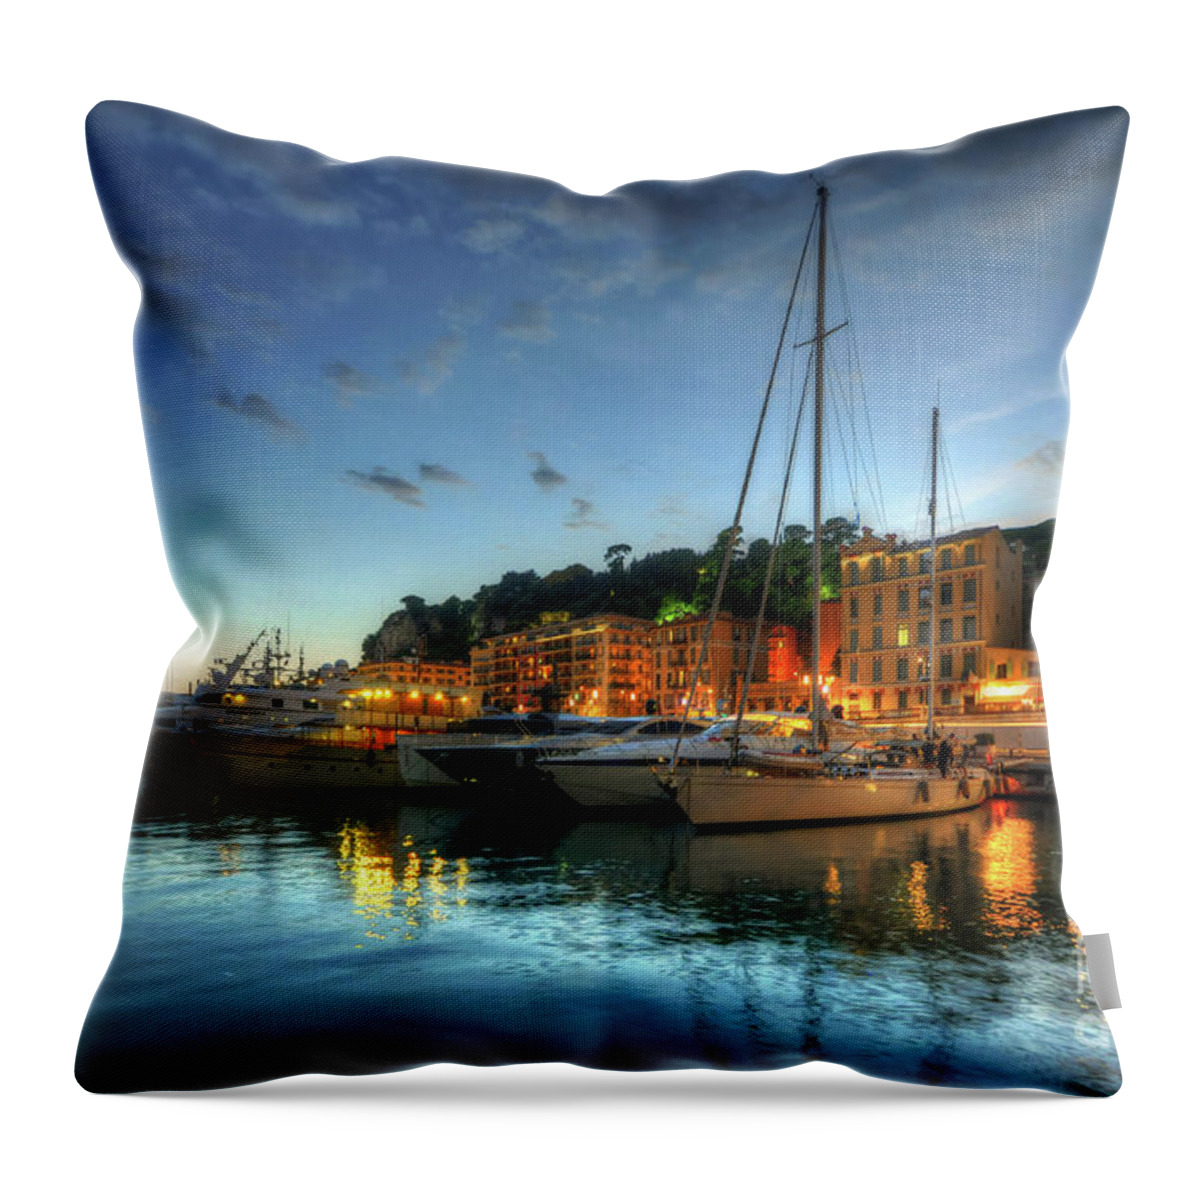 Yhun Suarez Throw Pillow featuring the photograph Blue Hour At Port Nice 2.0 by Yhun Suarez